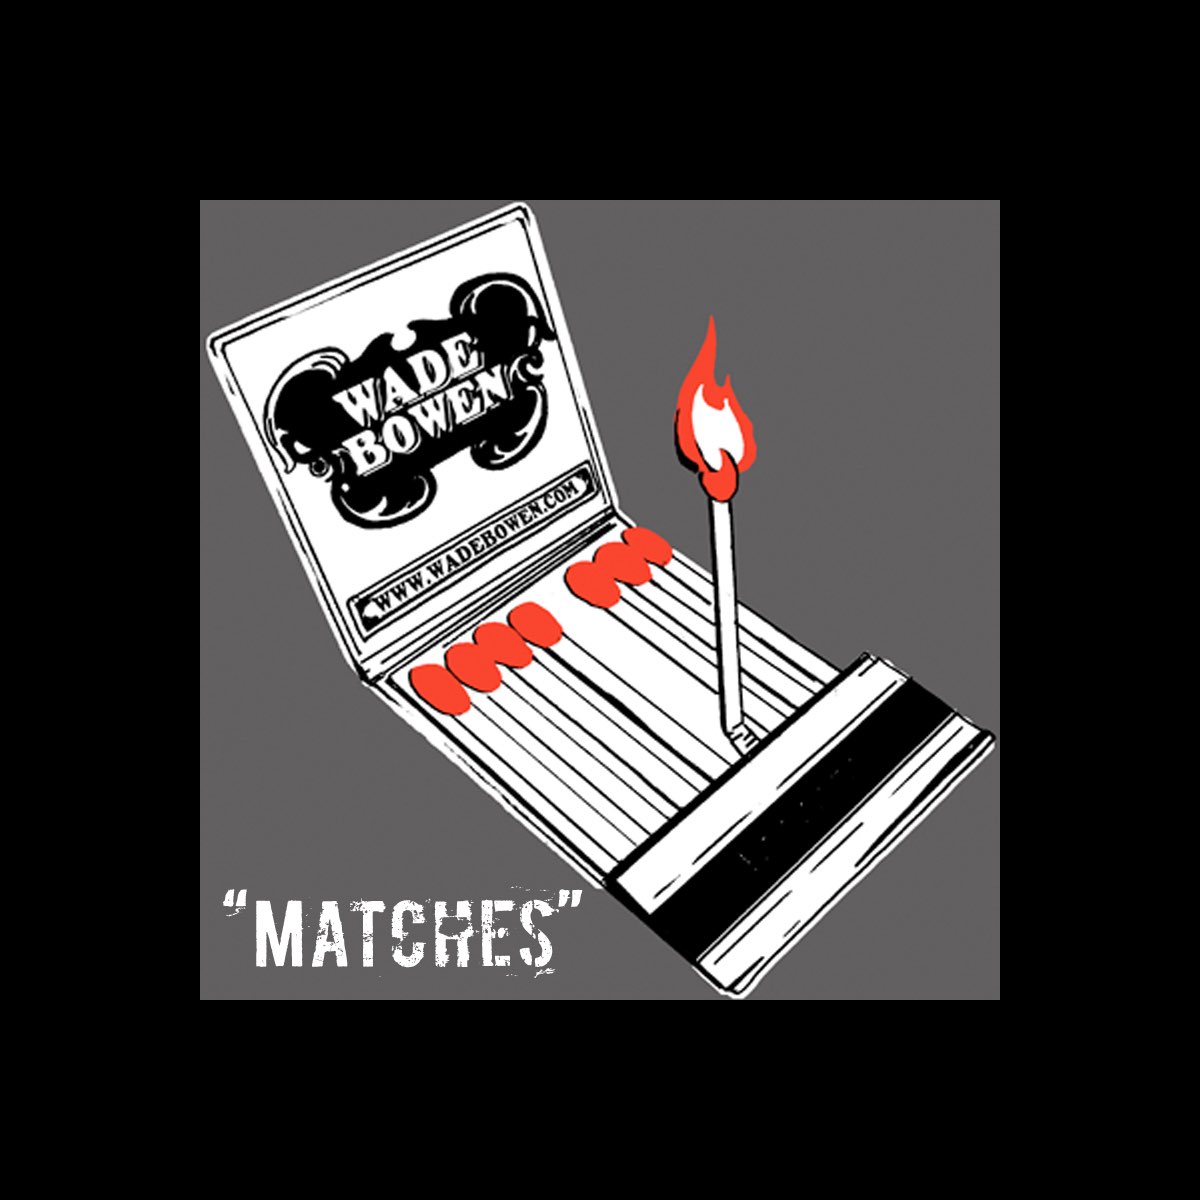 Single match